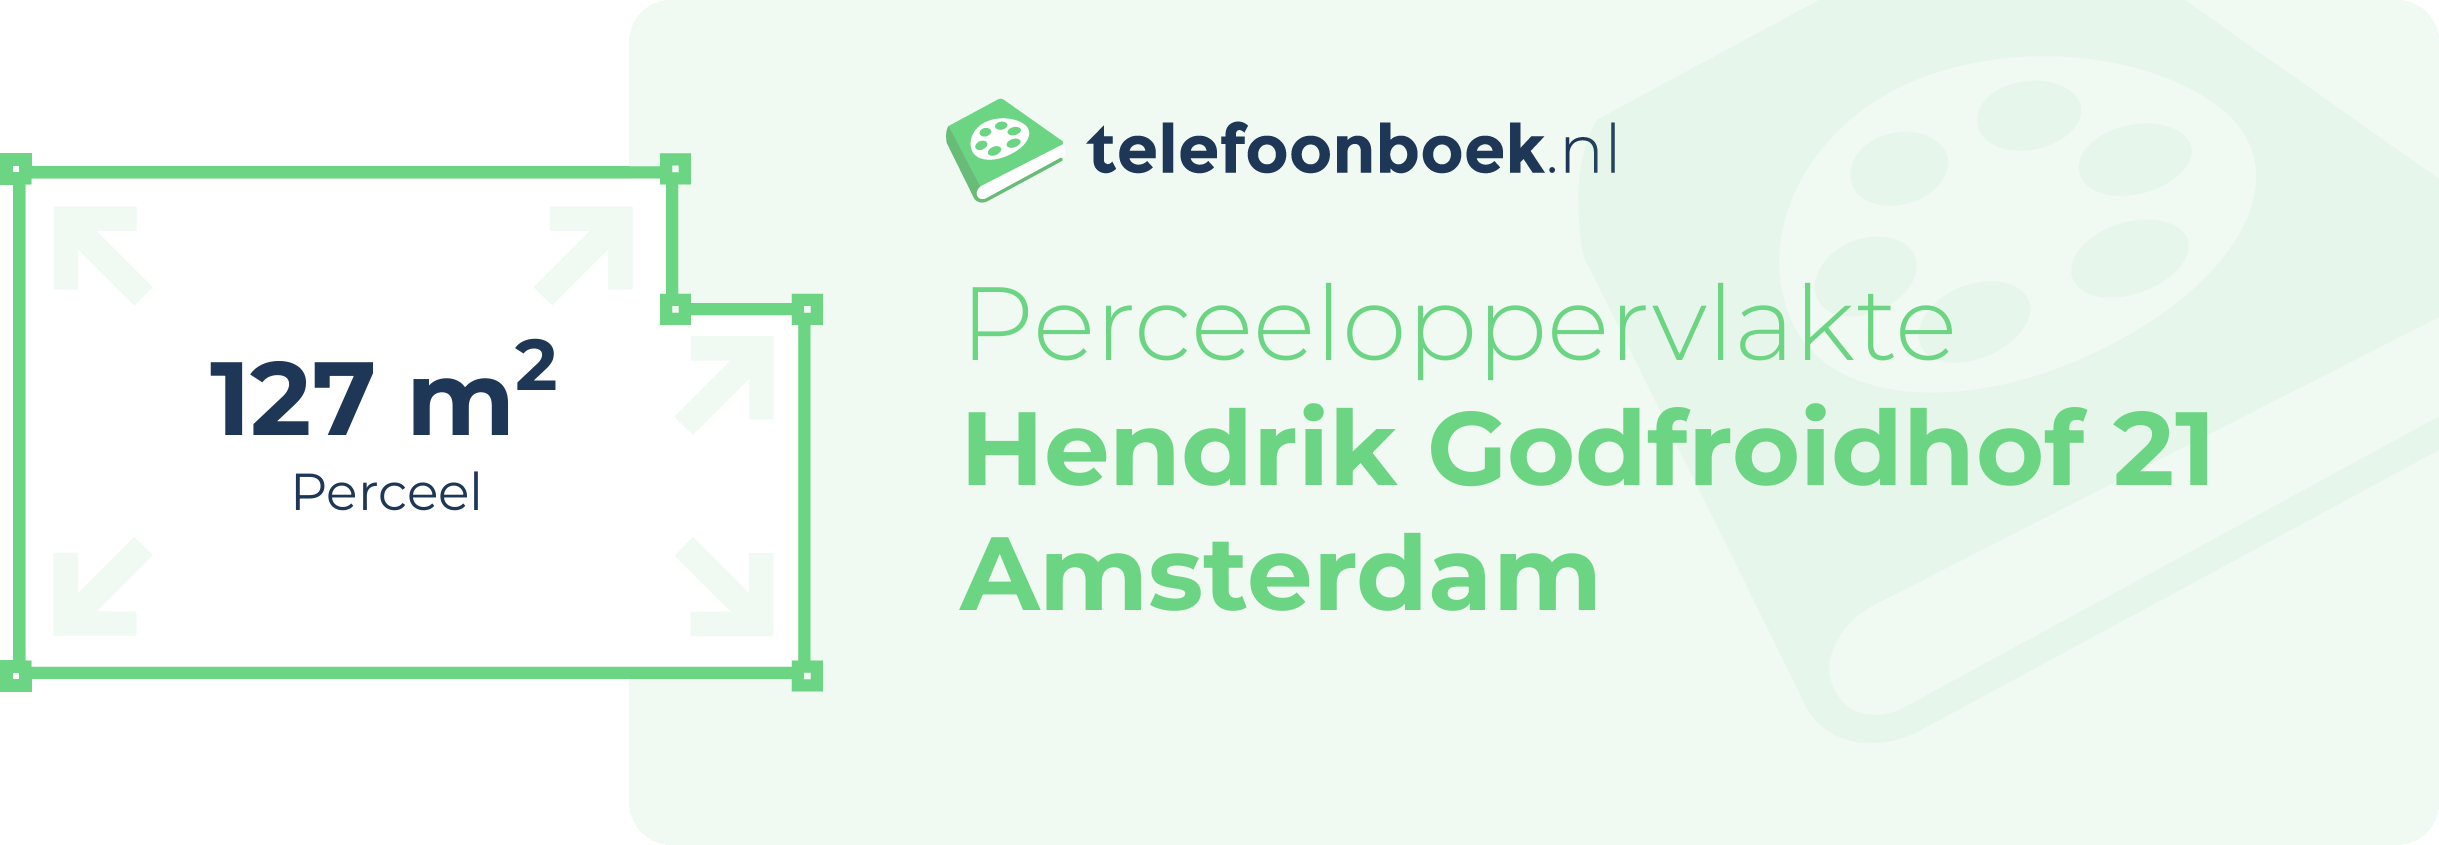 Perceeloppervlakte Hendrik Godfroidhof 21 Amsterdam